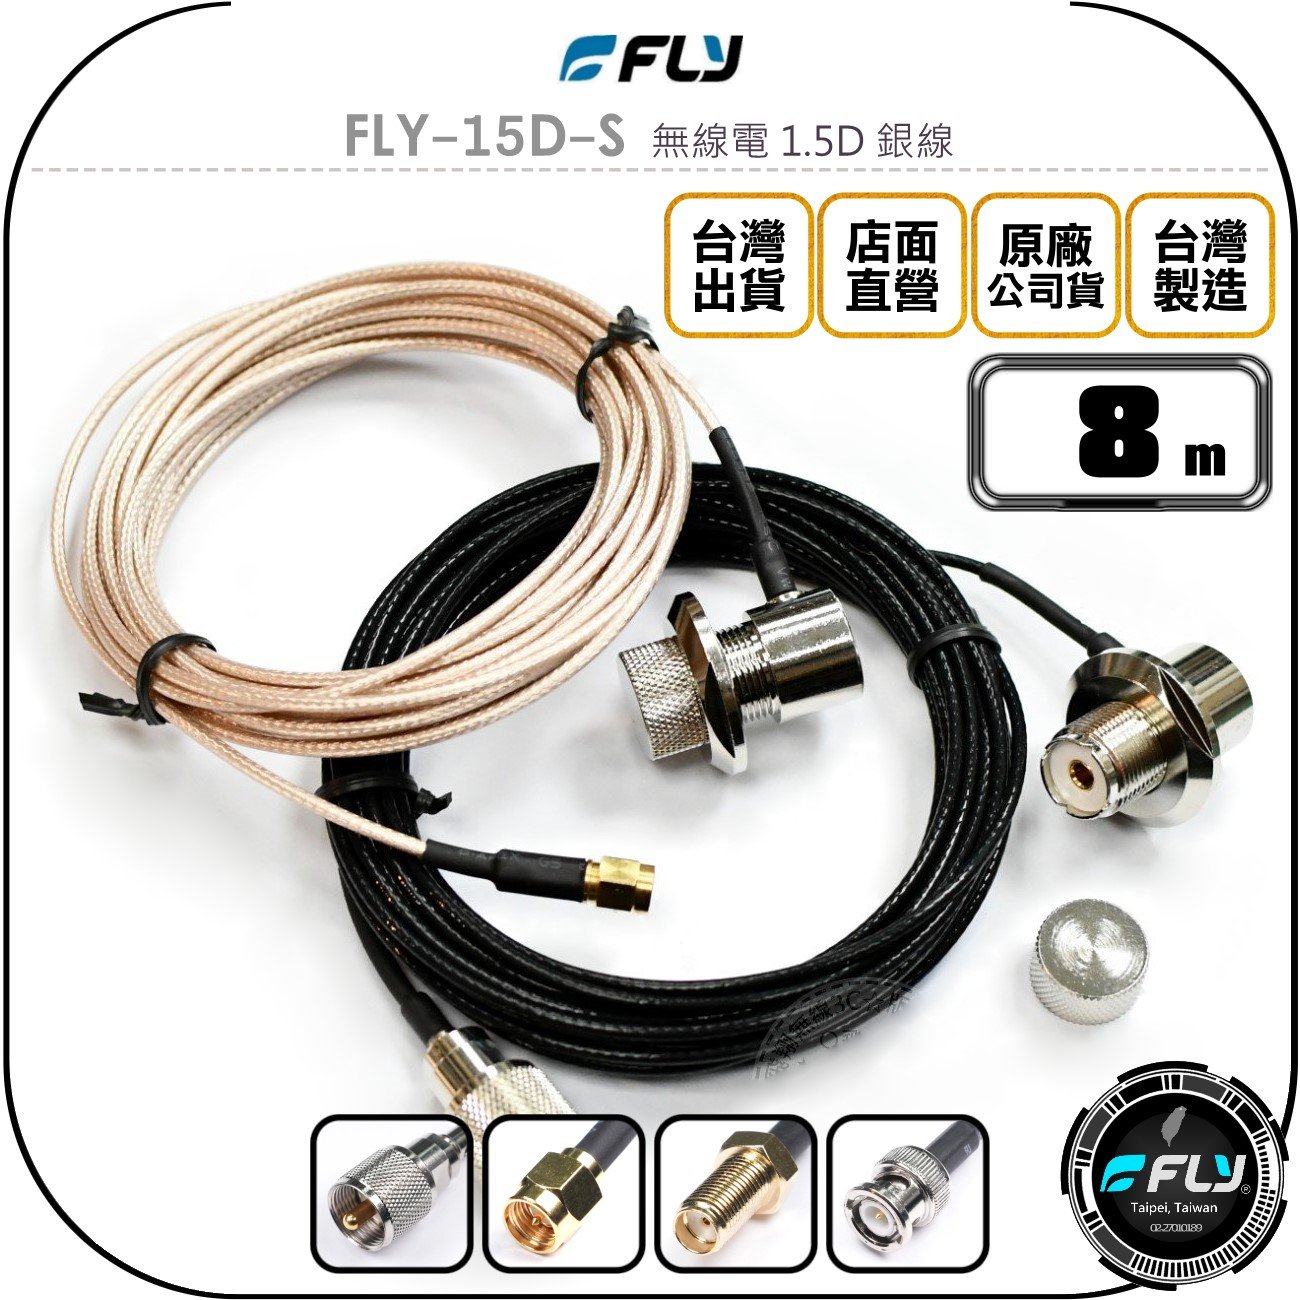 《飛翔無線3C》FLY FLY-15D-S 無線電 1.5D 銀線 8m◉公司貨◉訊號線◉對講機收發◉車機外接傳輸